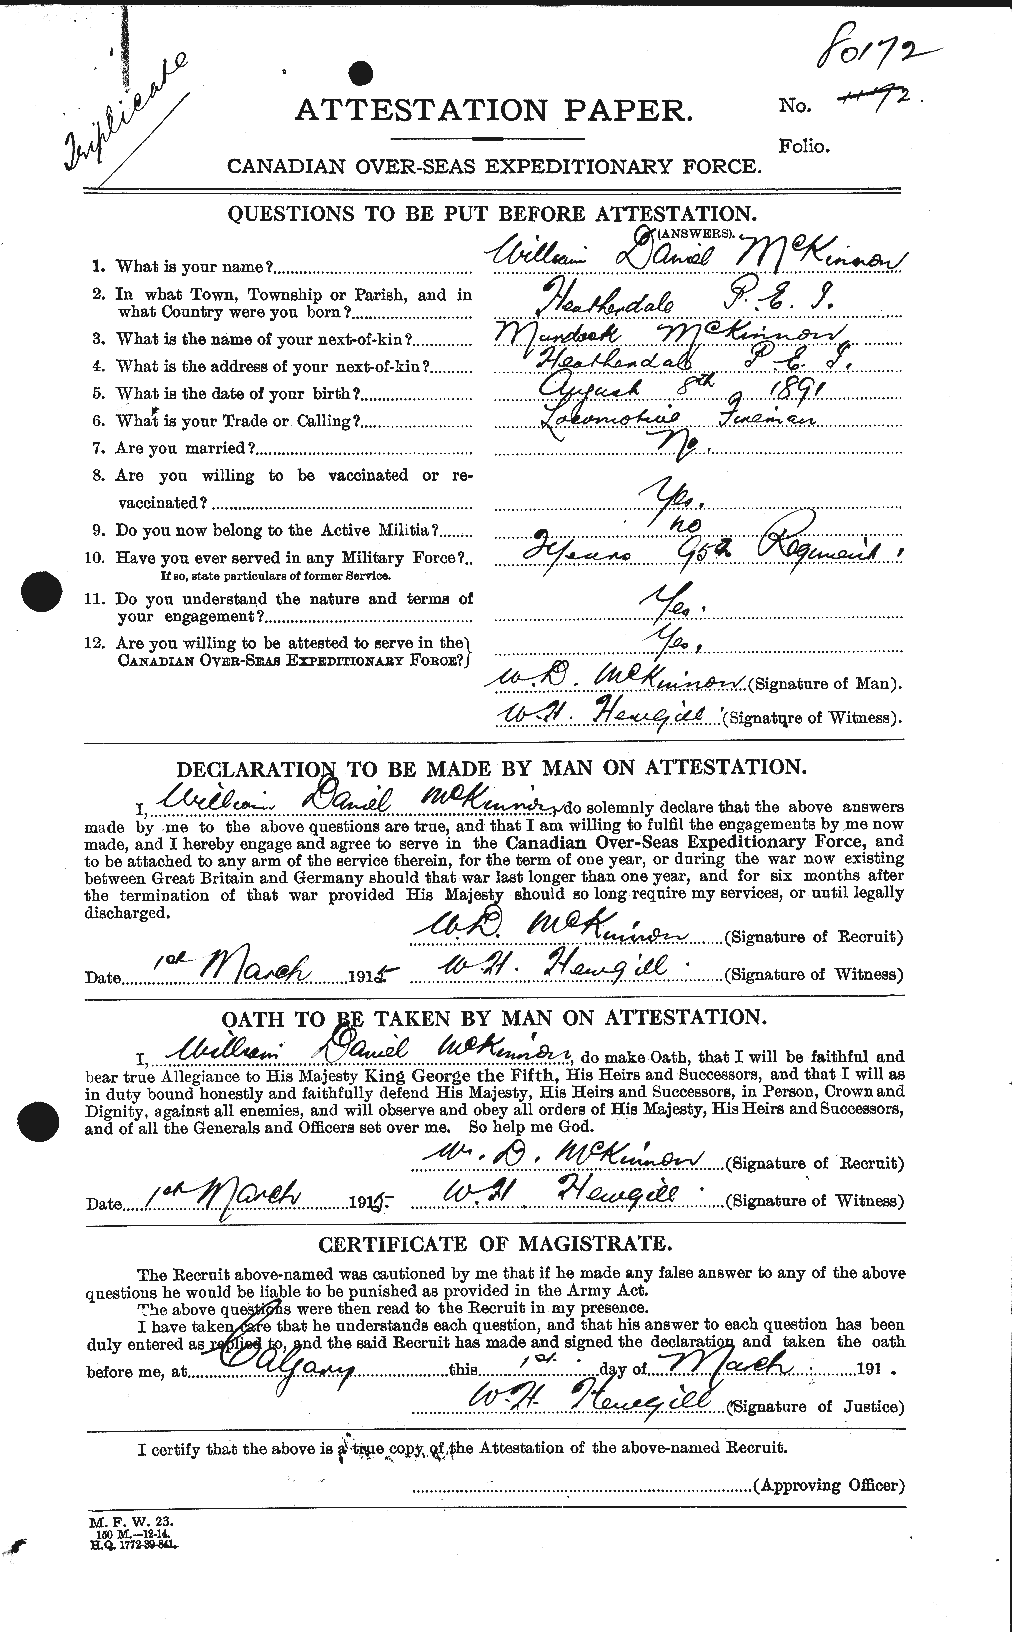 Dossiers du Personnel de la Première Guerre mondiale - CEC 534319a